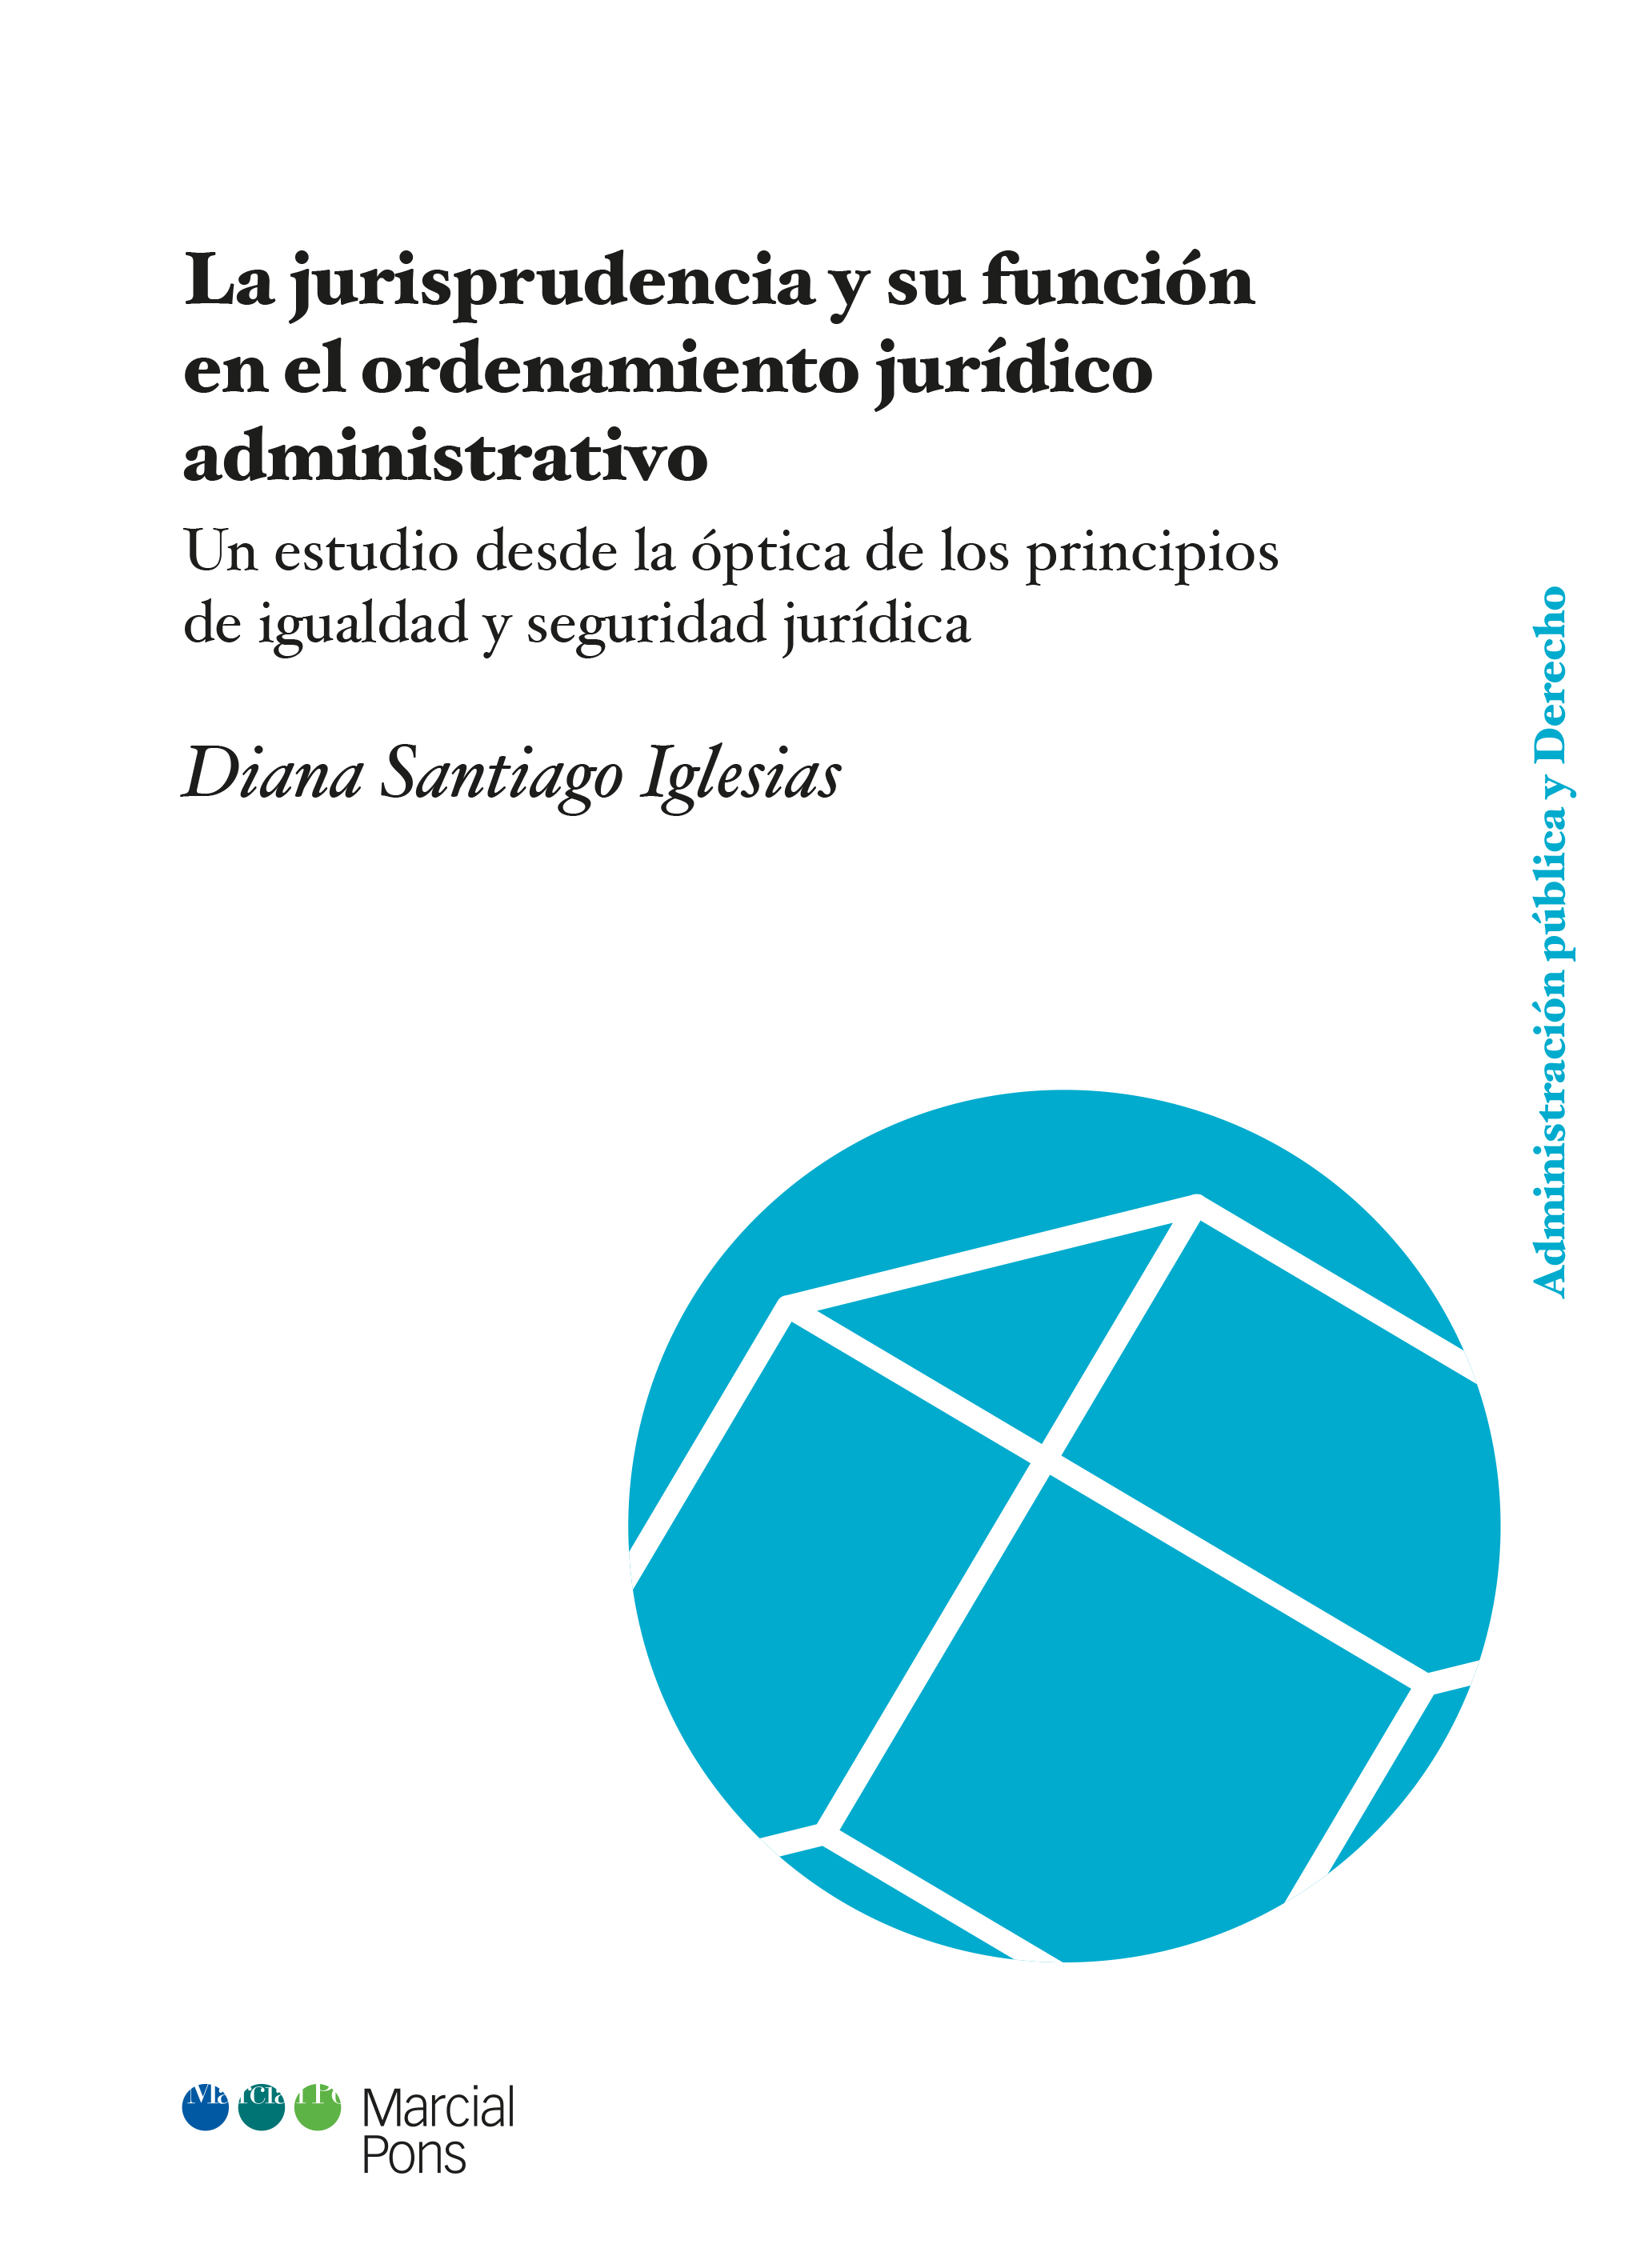 La jurisprudencia y su función en el ordenamiento jurídico administrativo   «Un estudio desde la óptica de los principios de igualdad y seguridad jurídica»